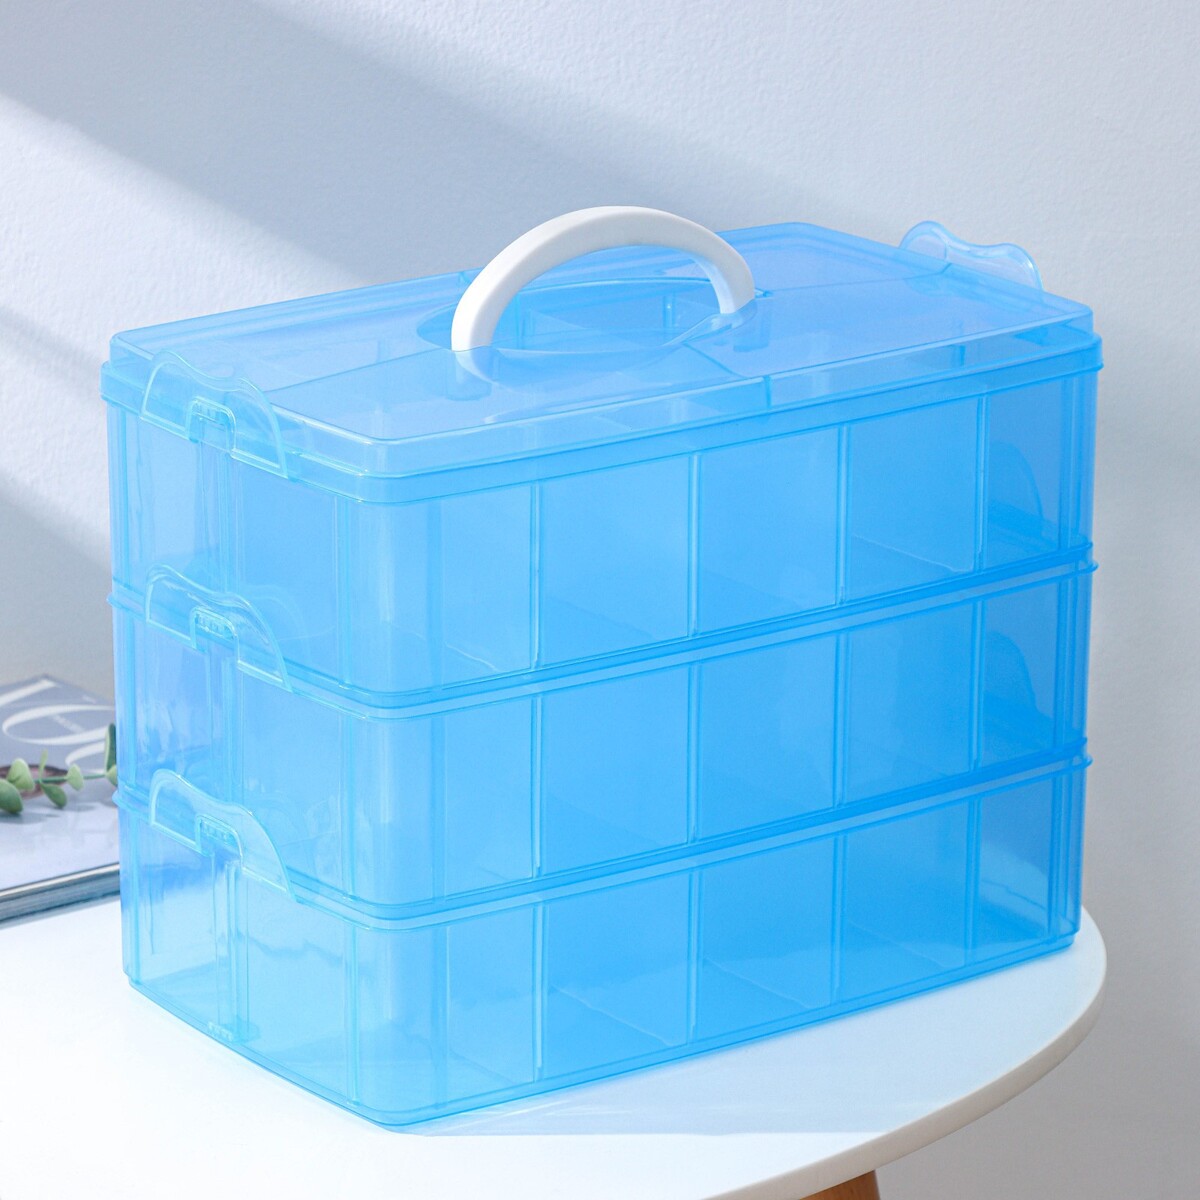 Органайзер для хранения пластиковый, 3 яруса, 30 отделений, 32×18×24 см, цвет голубой контейнер пластиковый для хранения с крышкой ажур 35×27×21 см микс